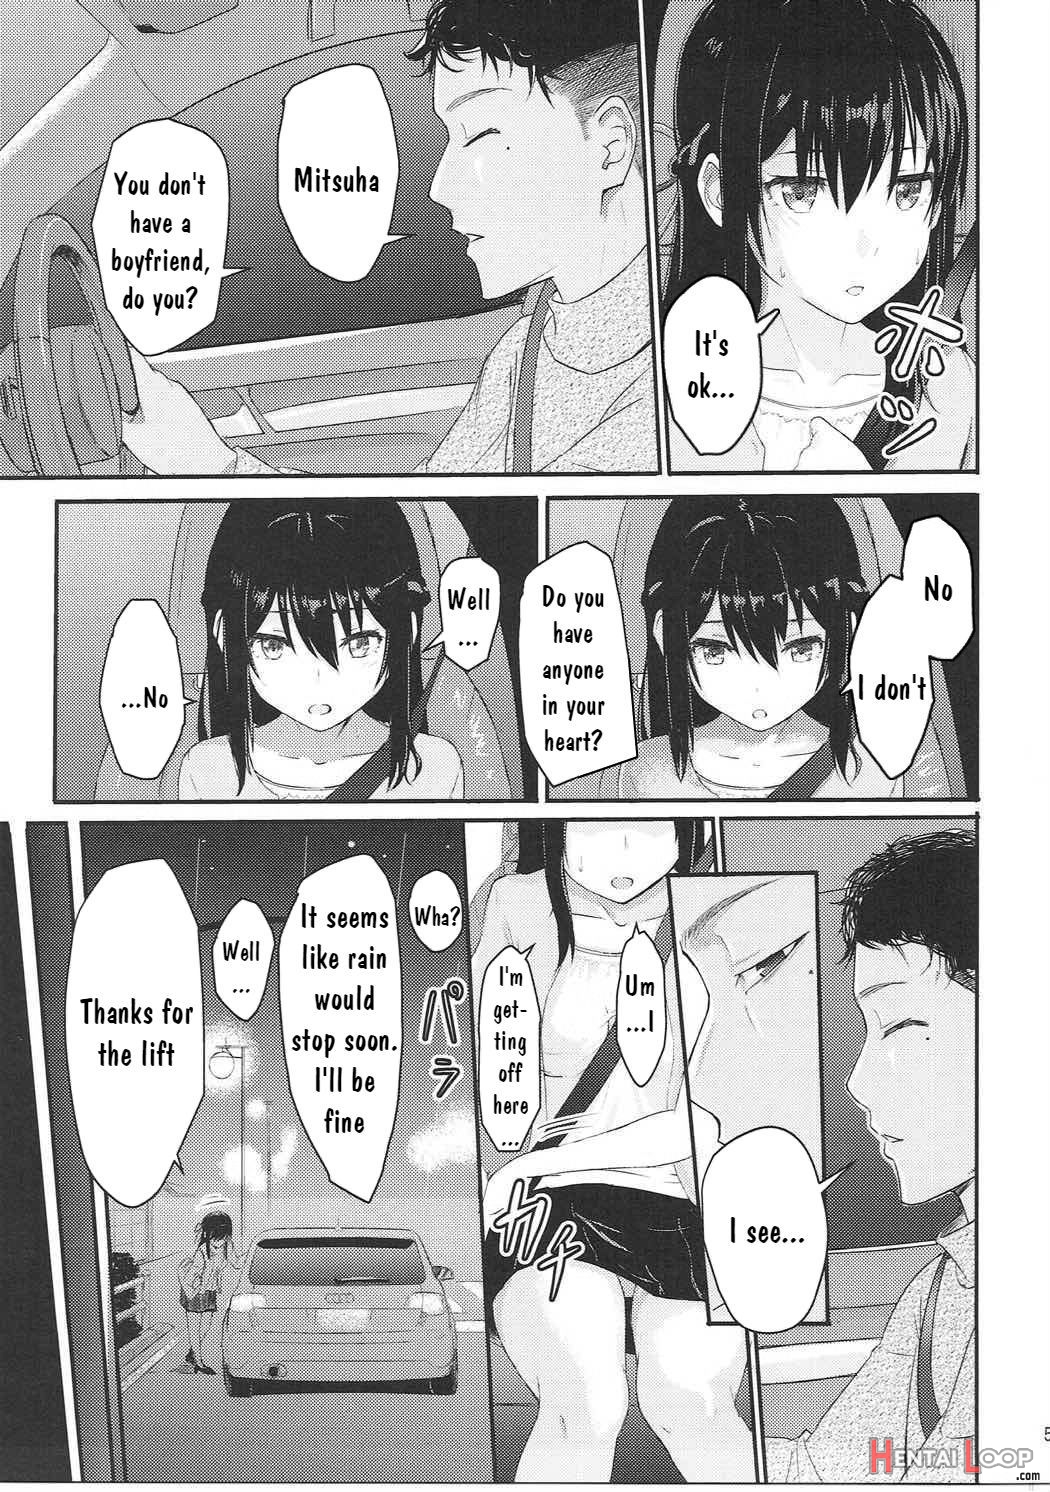 Mitsuha page 4